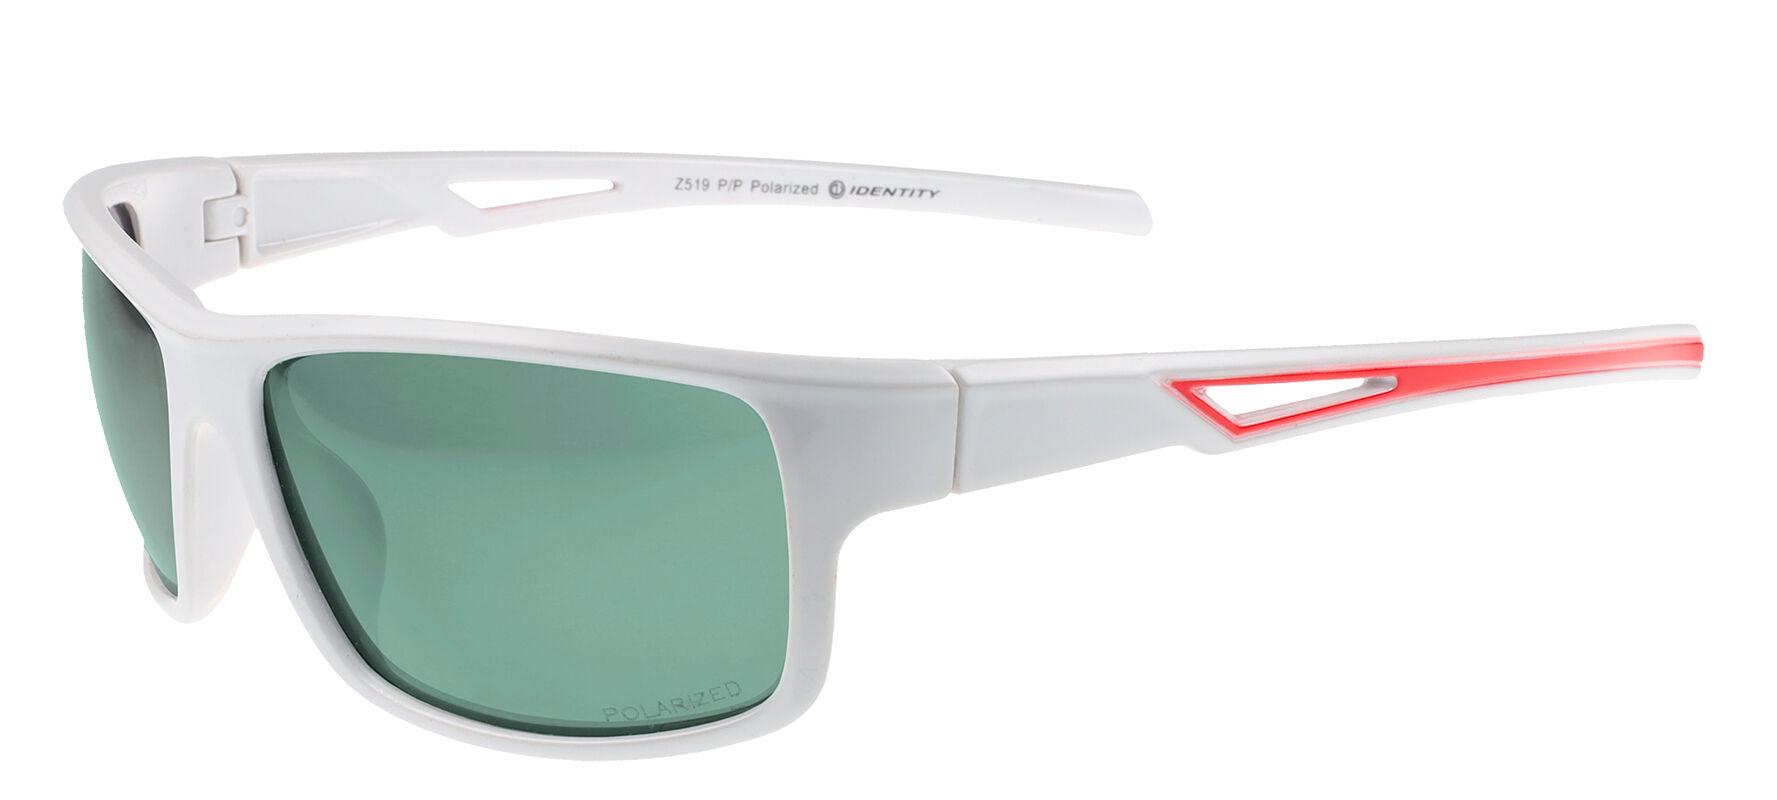 Slnečné okuliare polarizačné Sport/Z519EP/P